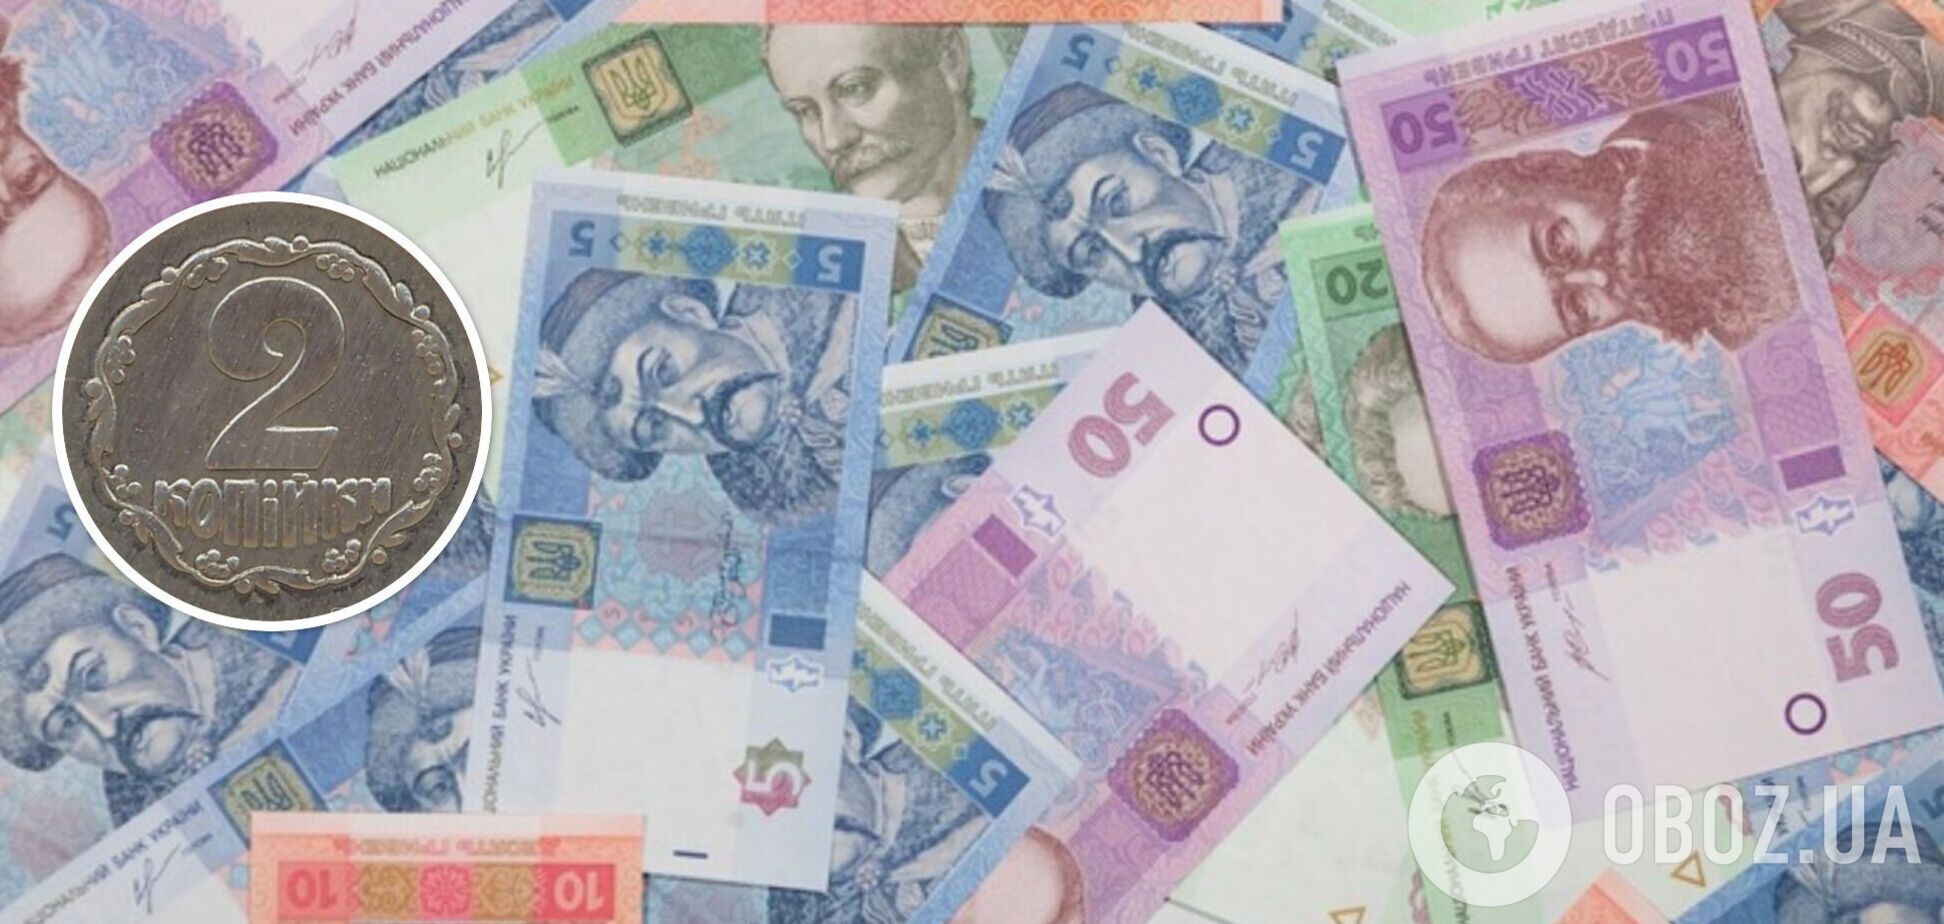 Украинские 2 копейки продают за 90 тыс. грн